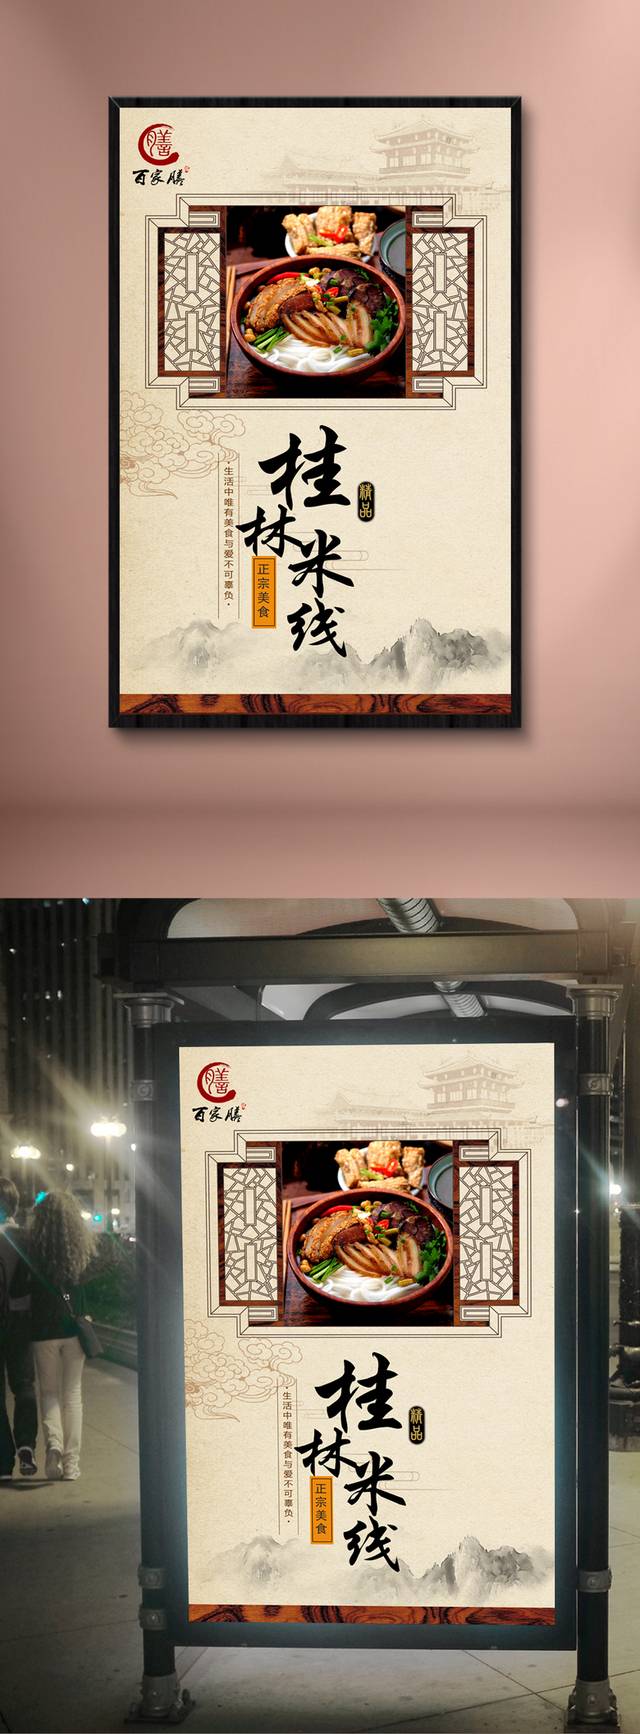 桂林米粉宣传海报设计